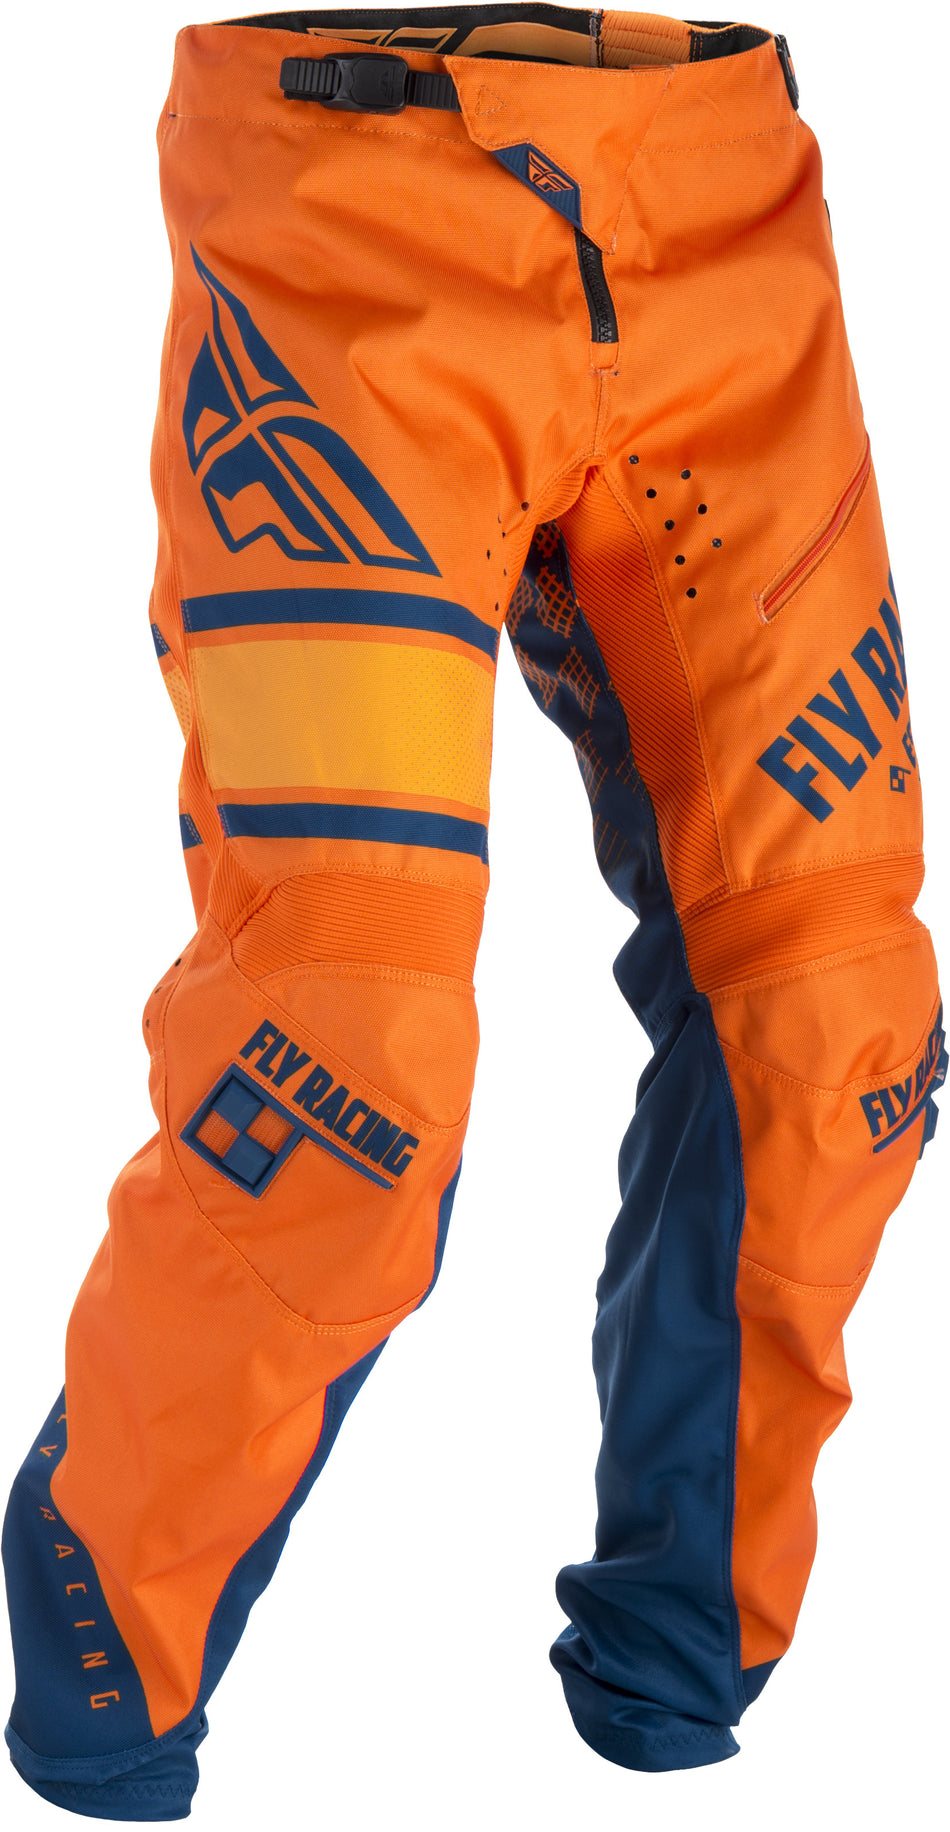 FLY RACING Kinetic Era Bicycle Pants Orange/Navy Sz 34 371-02834